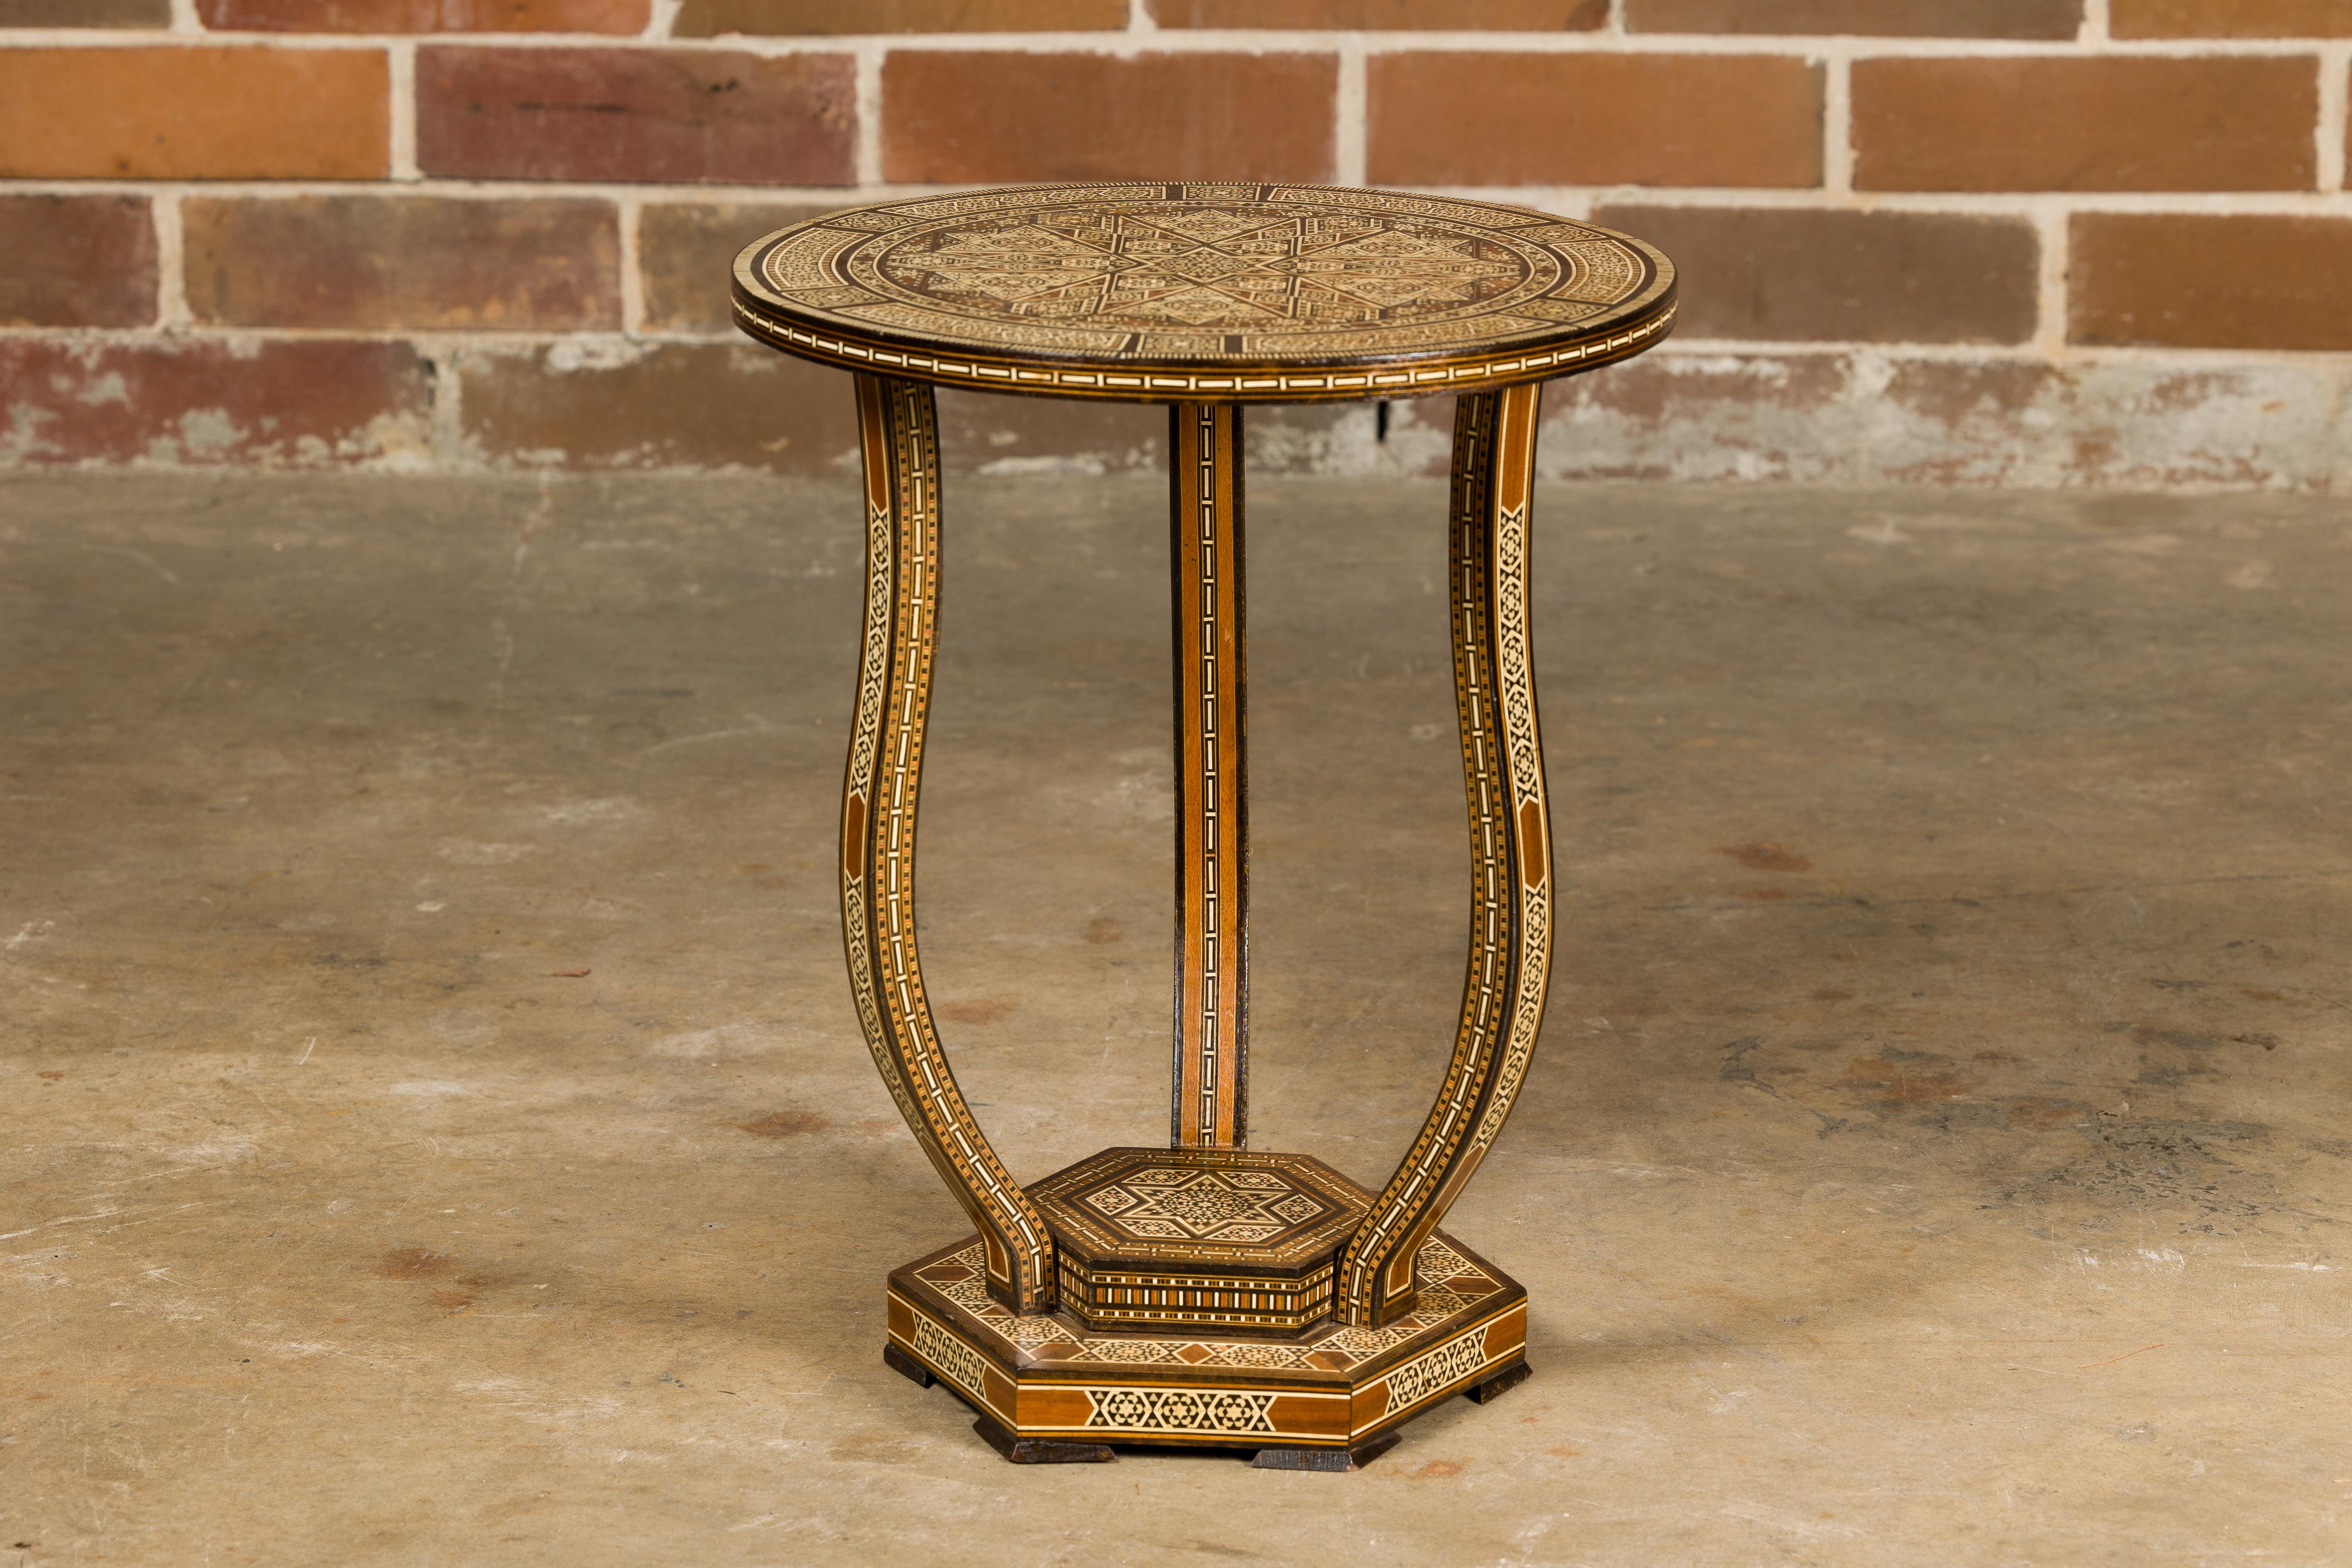 Table à boissons marocaine de style mauresque, datant d'environ 1900, avec plateau circulaire, abondante incrustation géométrique en os, trois pieds incurvés et une base hexagonale à gradins. Cette table à boissons marocaine de style mauresque